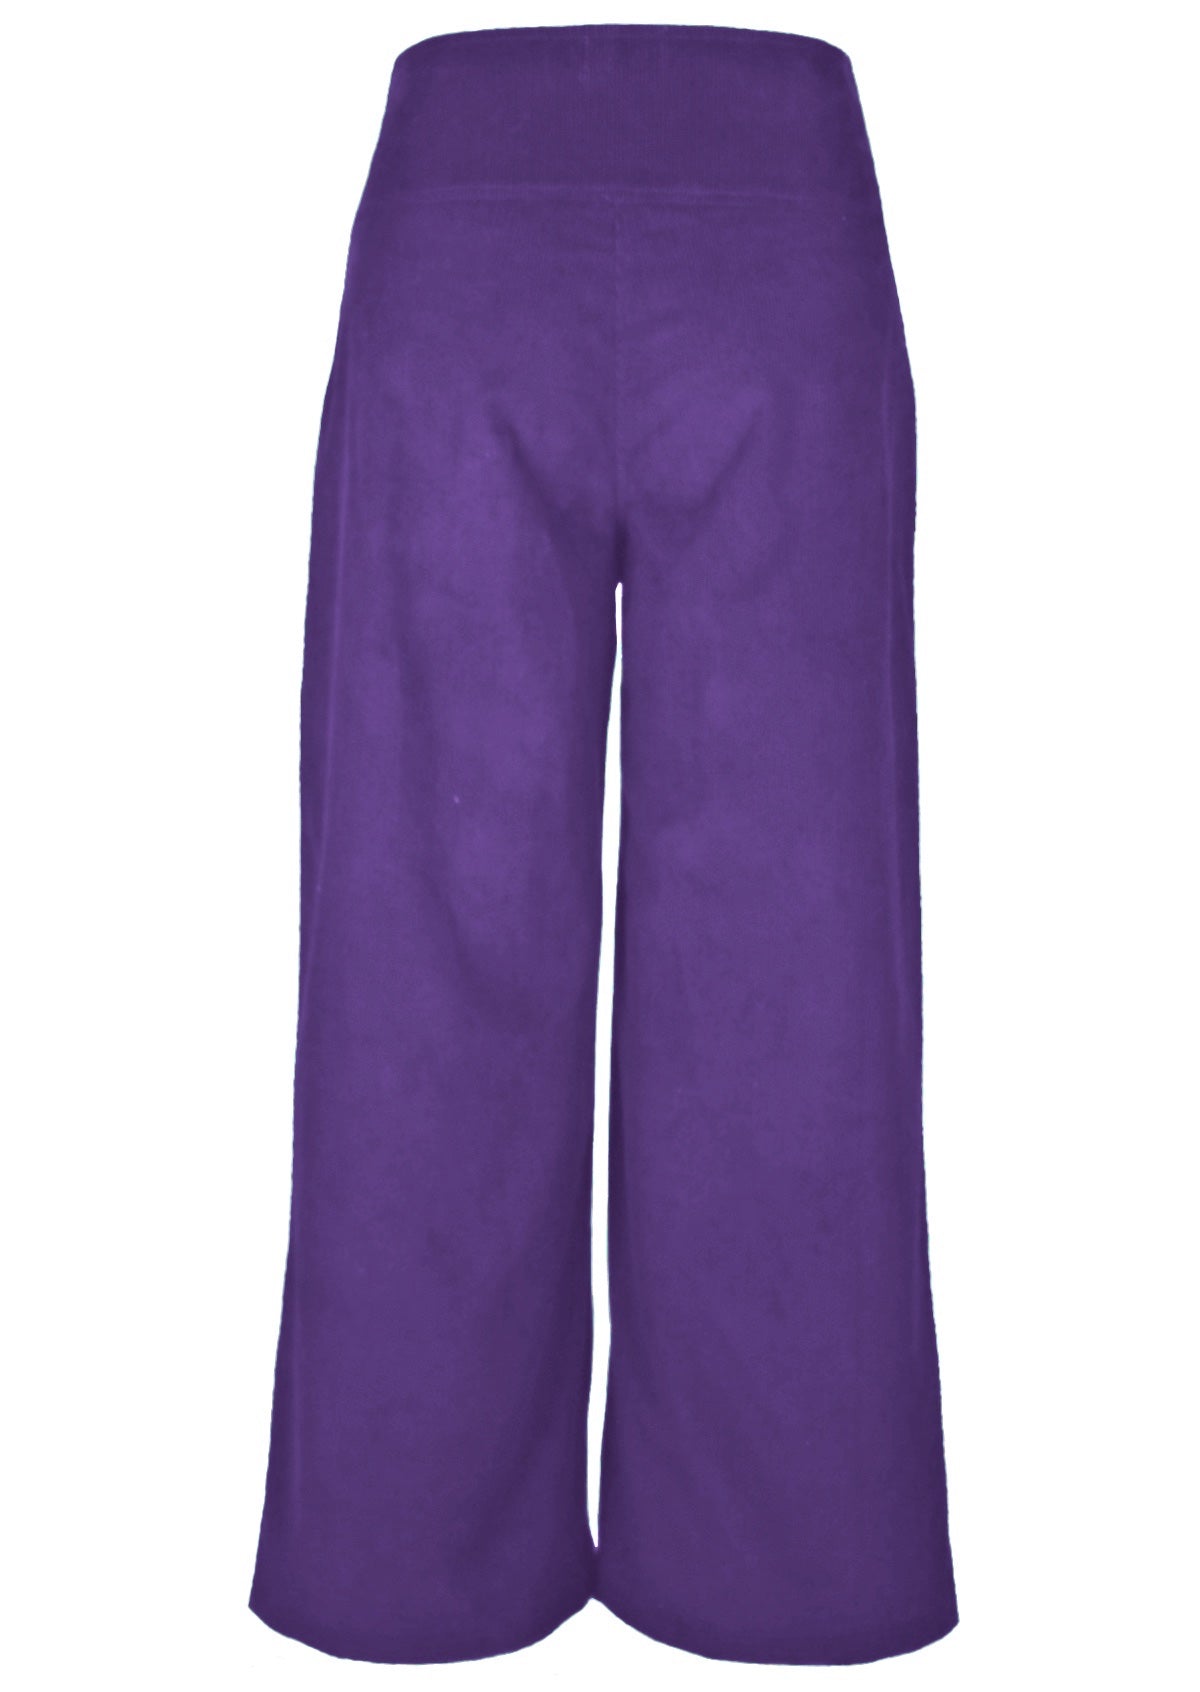 Purple corduroy 100% cotton pants have a high waistline.